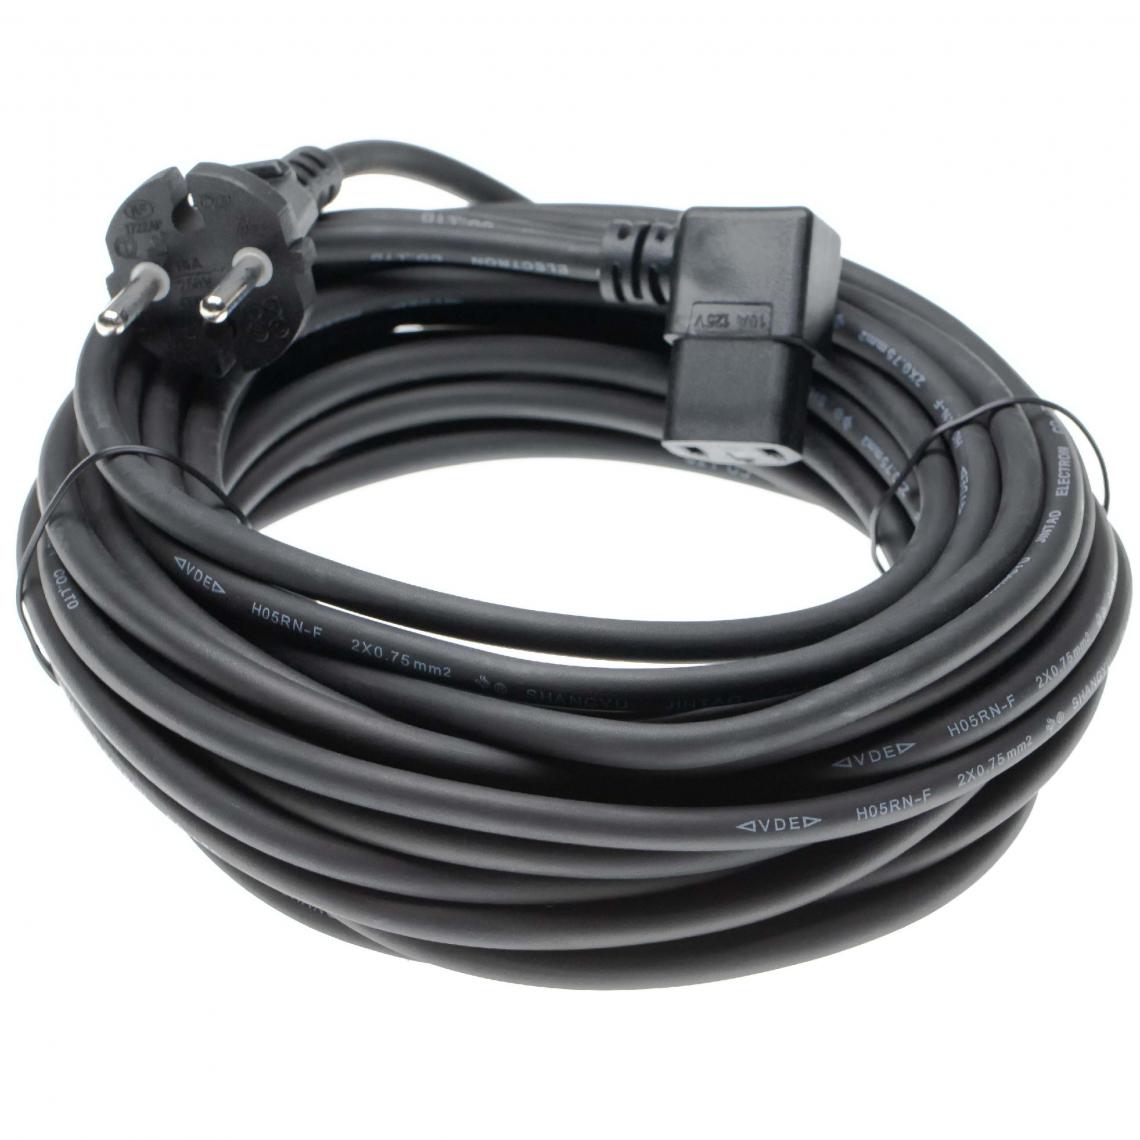 Vhbw - vhbw câble électrique compatible avec Kirby Sentria F-Style, Sentria II, Avalir, G9, Avalir 2 aspirateurs - câble de 10m, câble électrique - Cordons d'alimentation